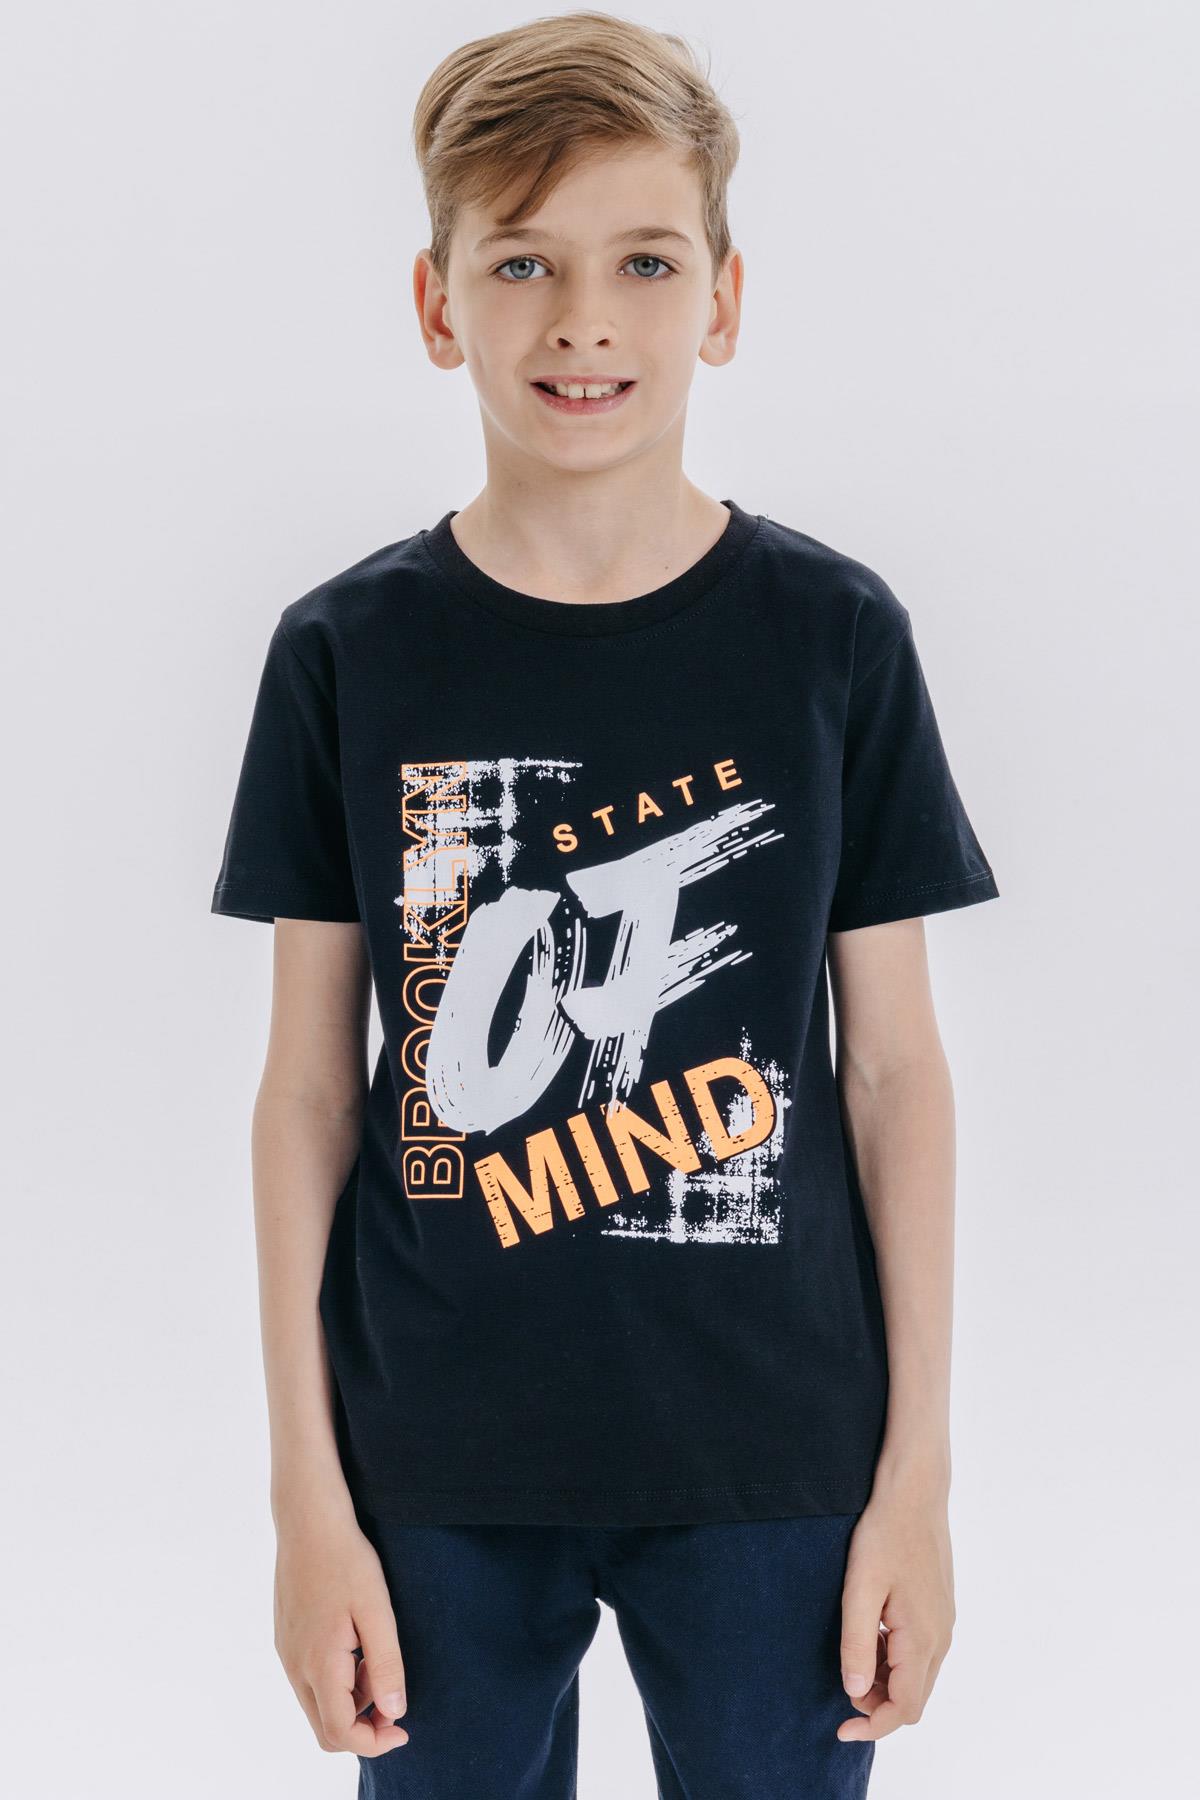 Erkek Çocuk Tişört Yazı Baskılı Siyah 10-14 Yaş - Yazlık Tişört Modelleri |  Breeze